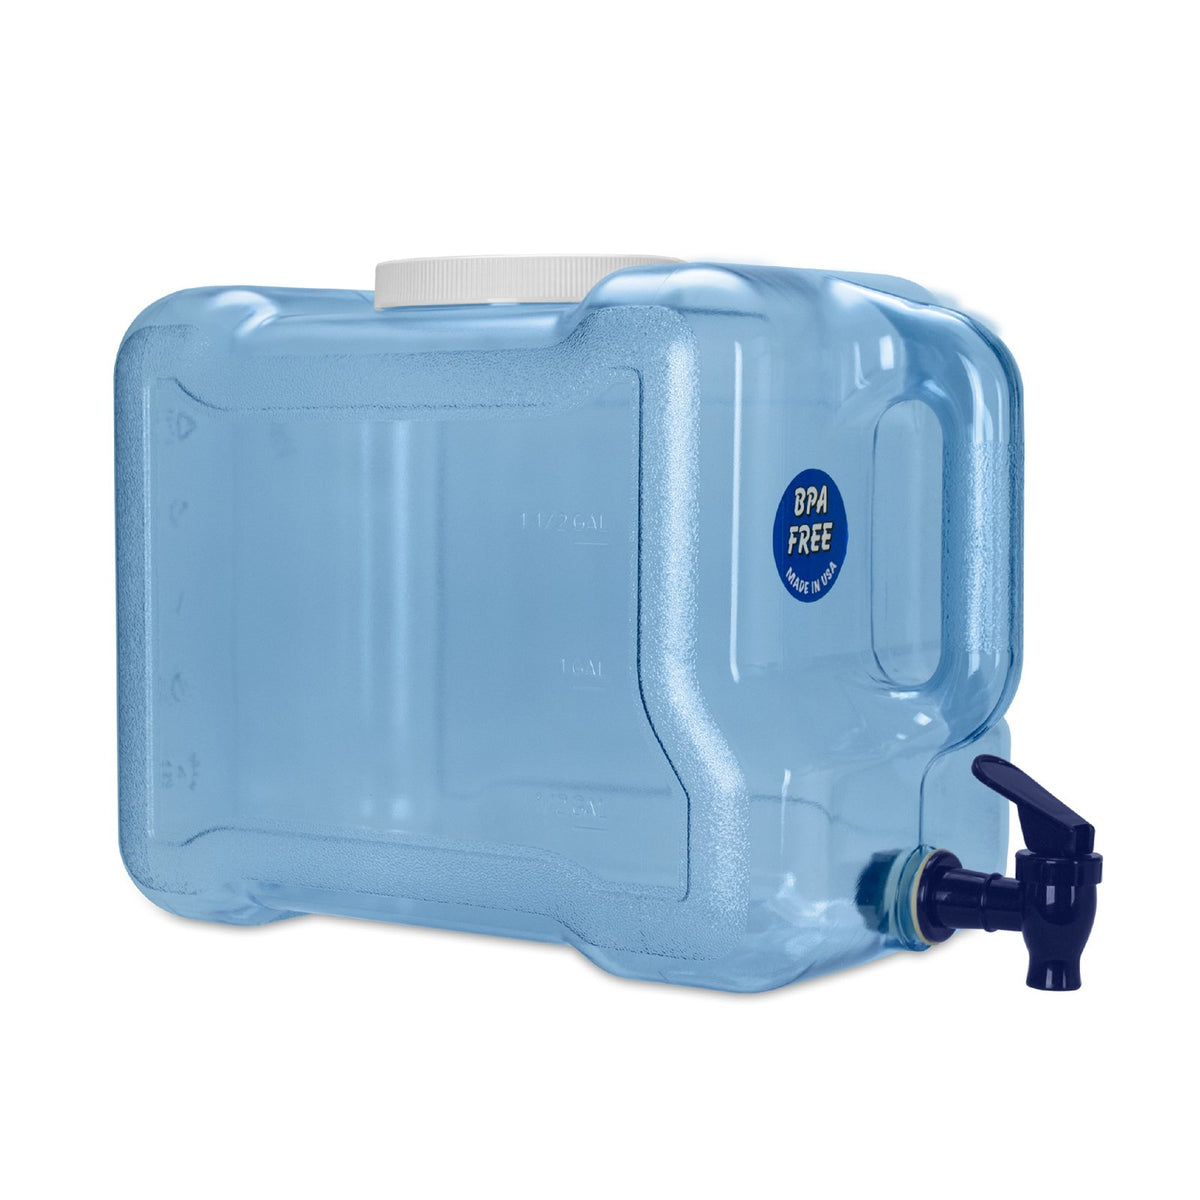 Paket] Complete set - Dispensador de agua, maquina agua con gas,  gasificadora de agua - SODA PYGMY, 2 grifo, Green Line